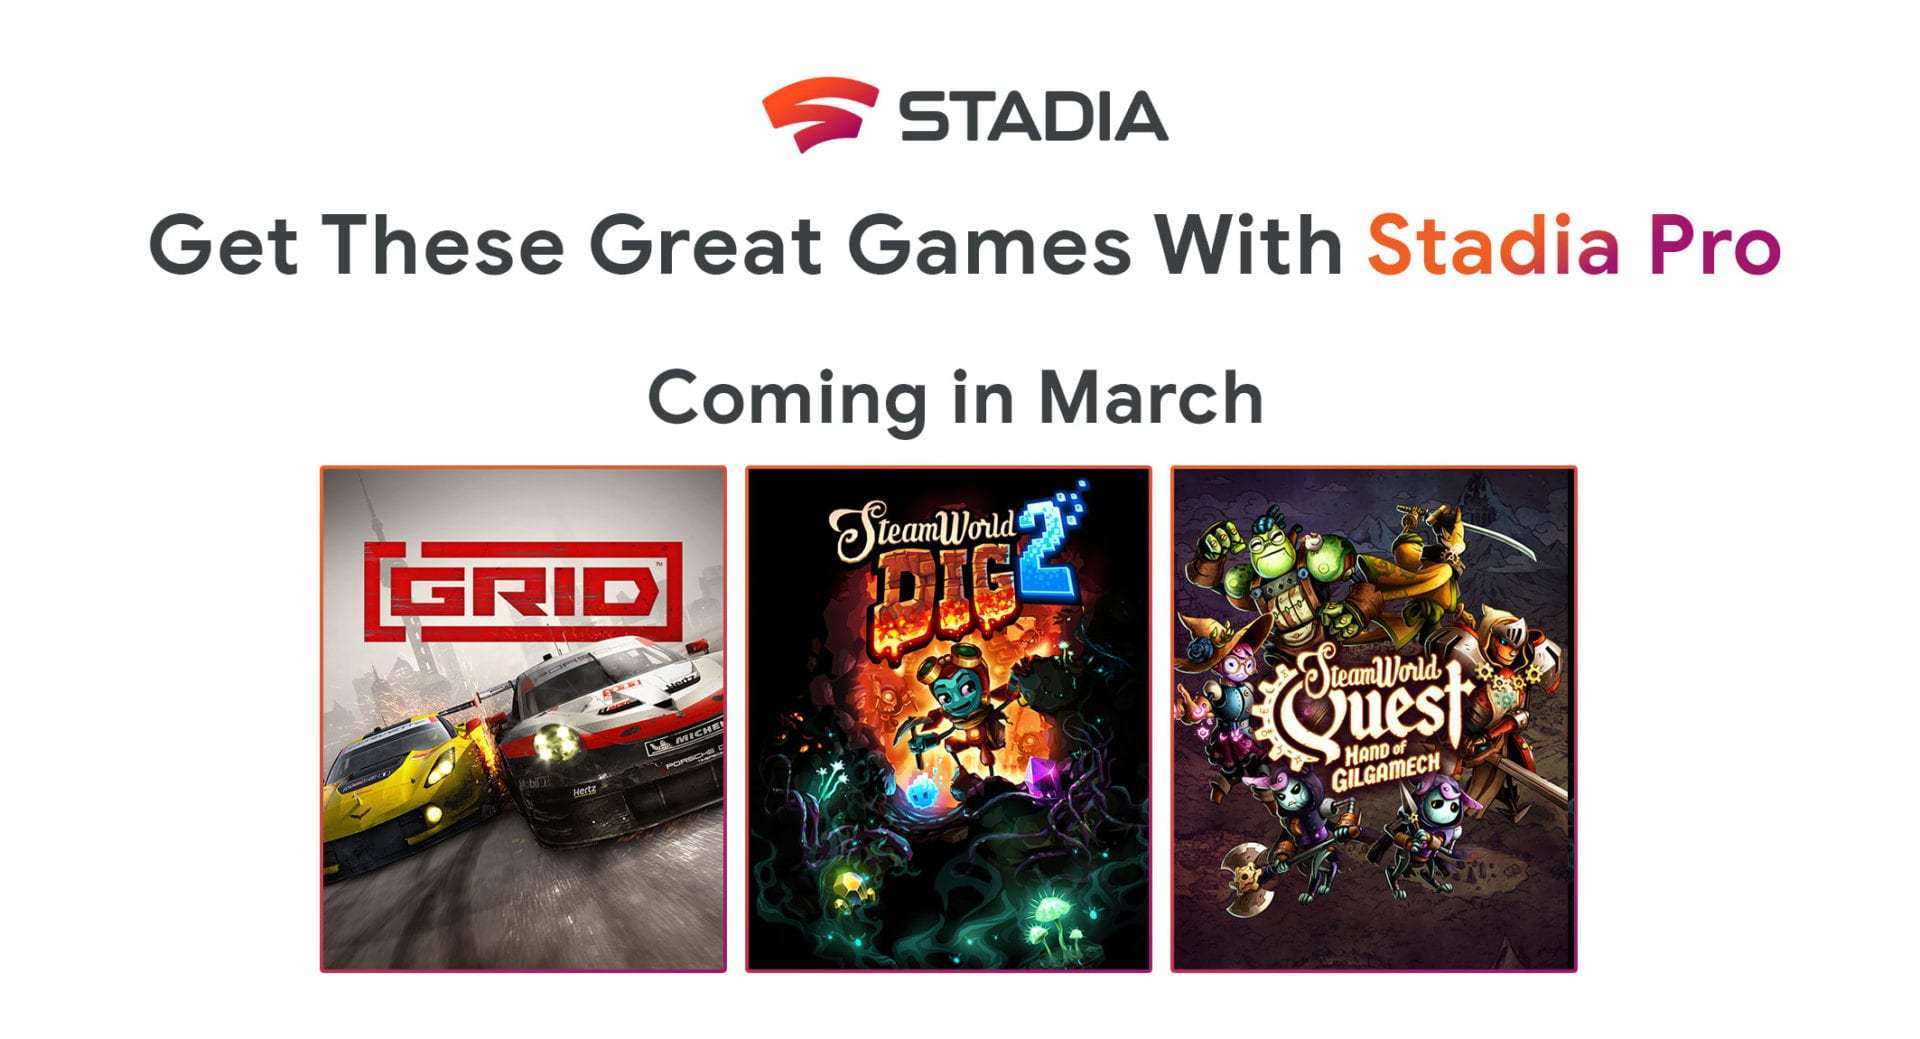 Miembros de Stadia Pro ahora recibirán 3 juegos gratis en Marzo